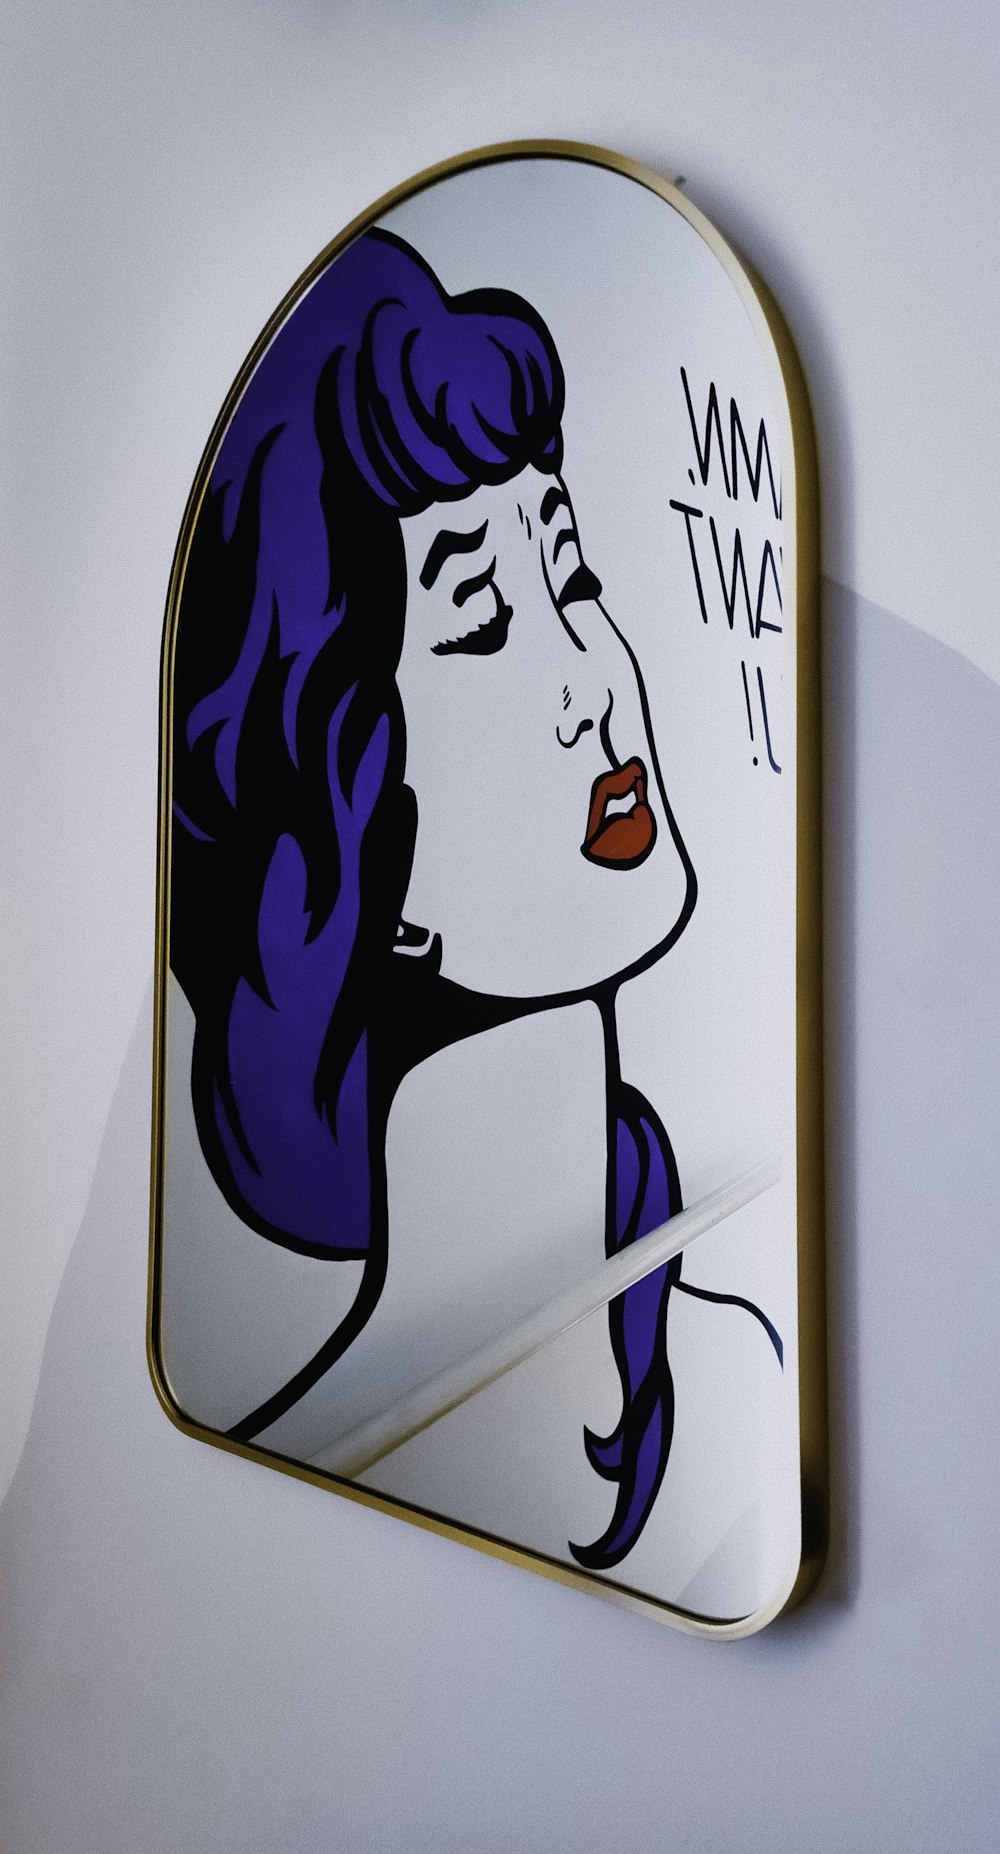 Un'immagine del volto di una donna su uno specchio